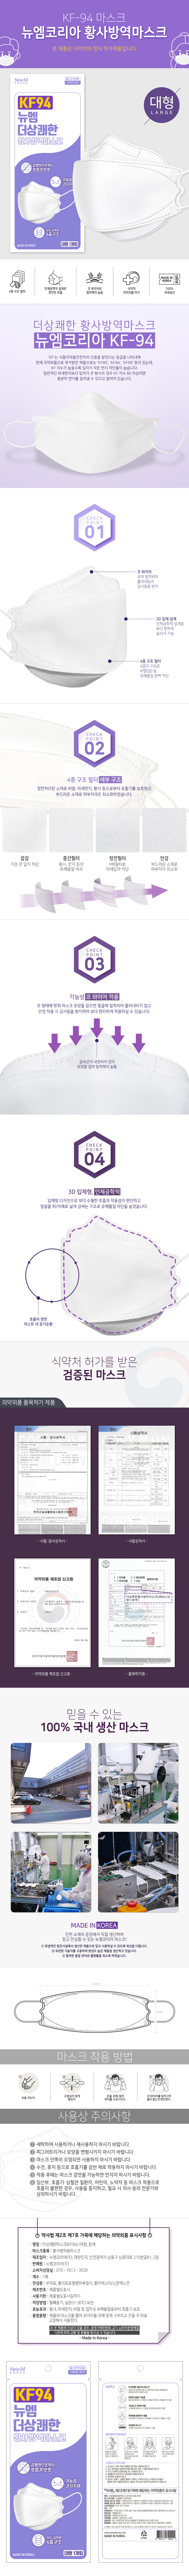 100%韓國製正版KF94口罩 現貨秒發 朴寶劍 IU 周子瑜 同款 FDA認證 立體防疫口罩🇰🇷 50片盒裝